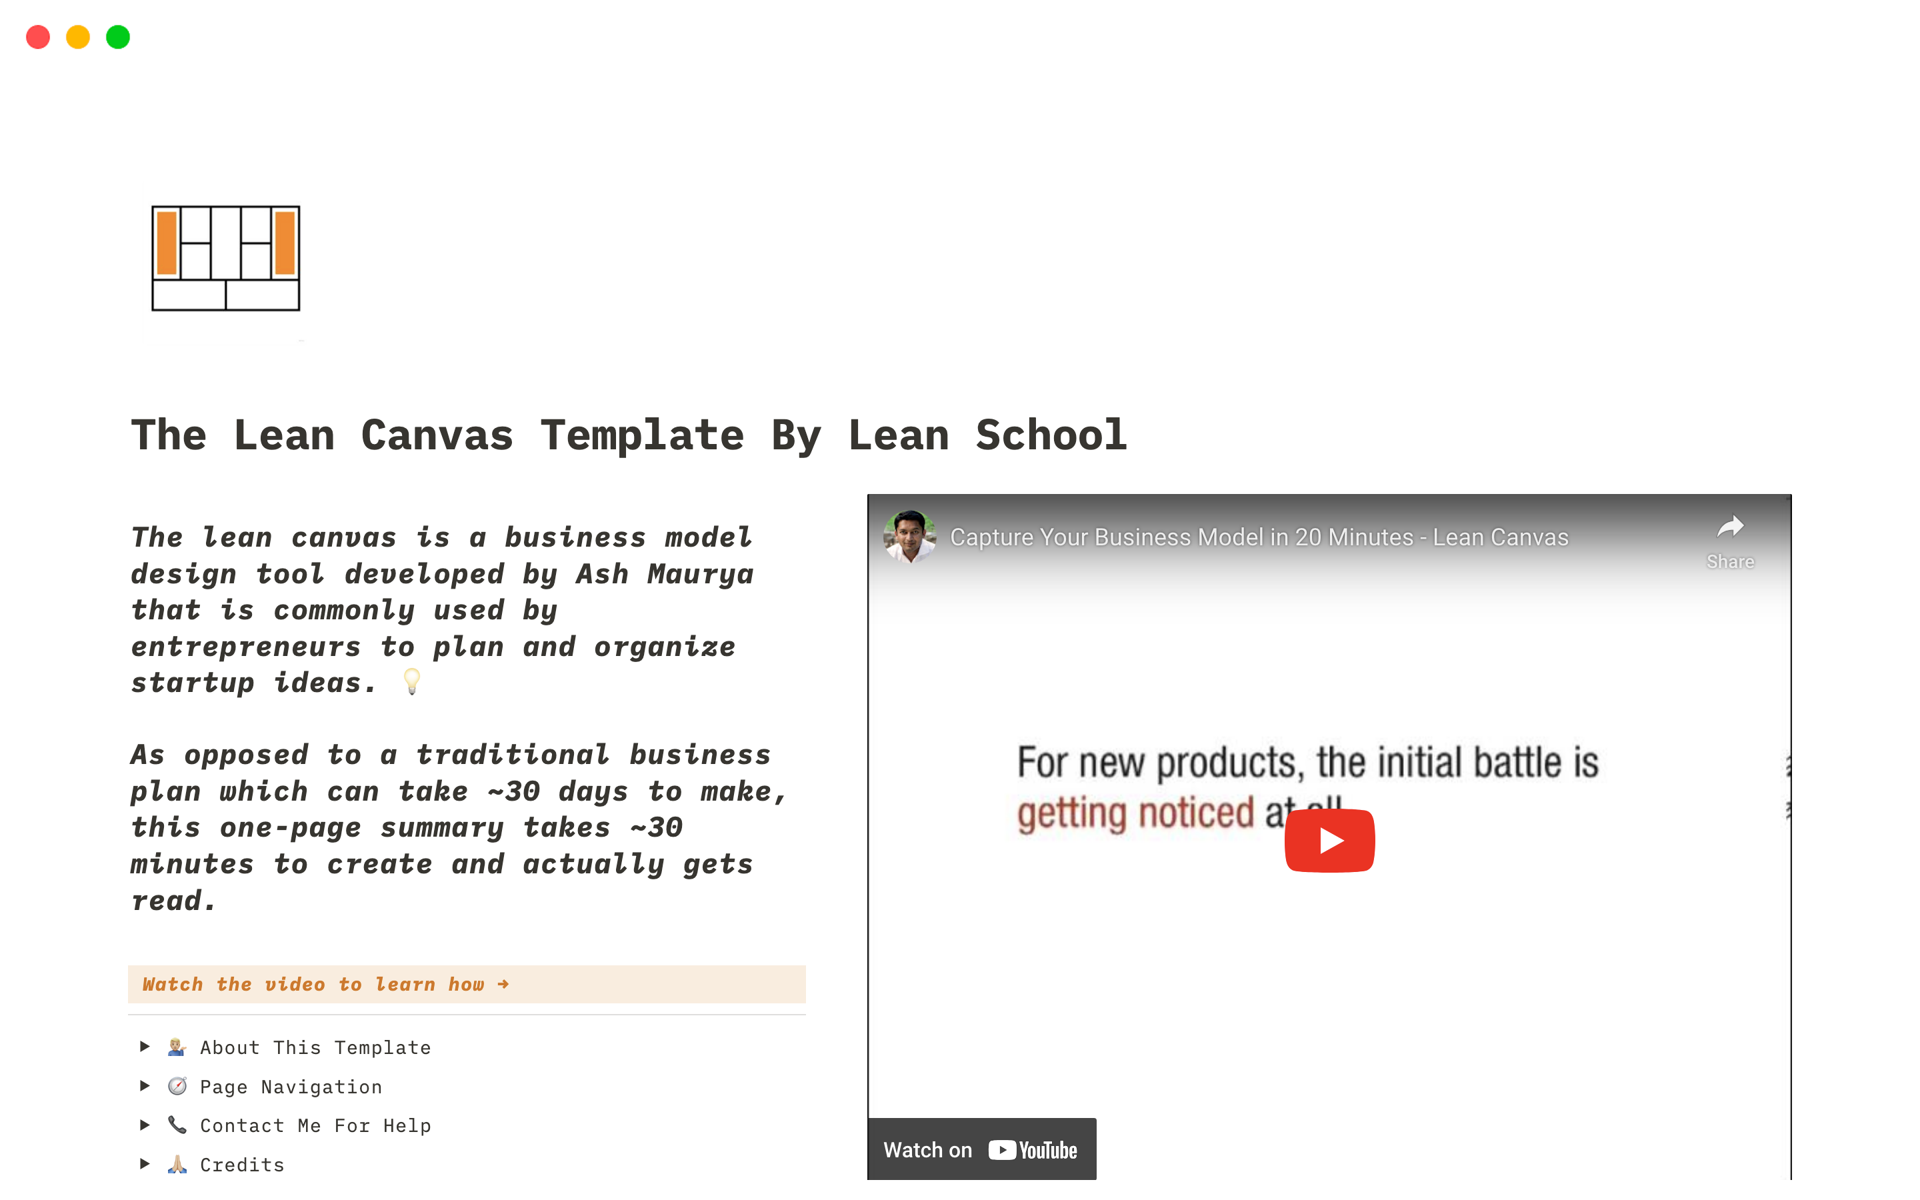 Aperçu du modèle de The Lean Canvas Template By Lean School